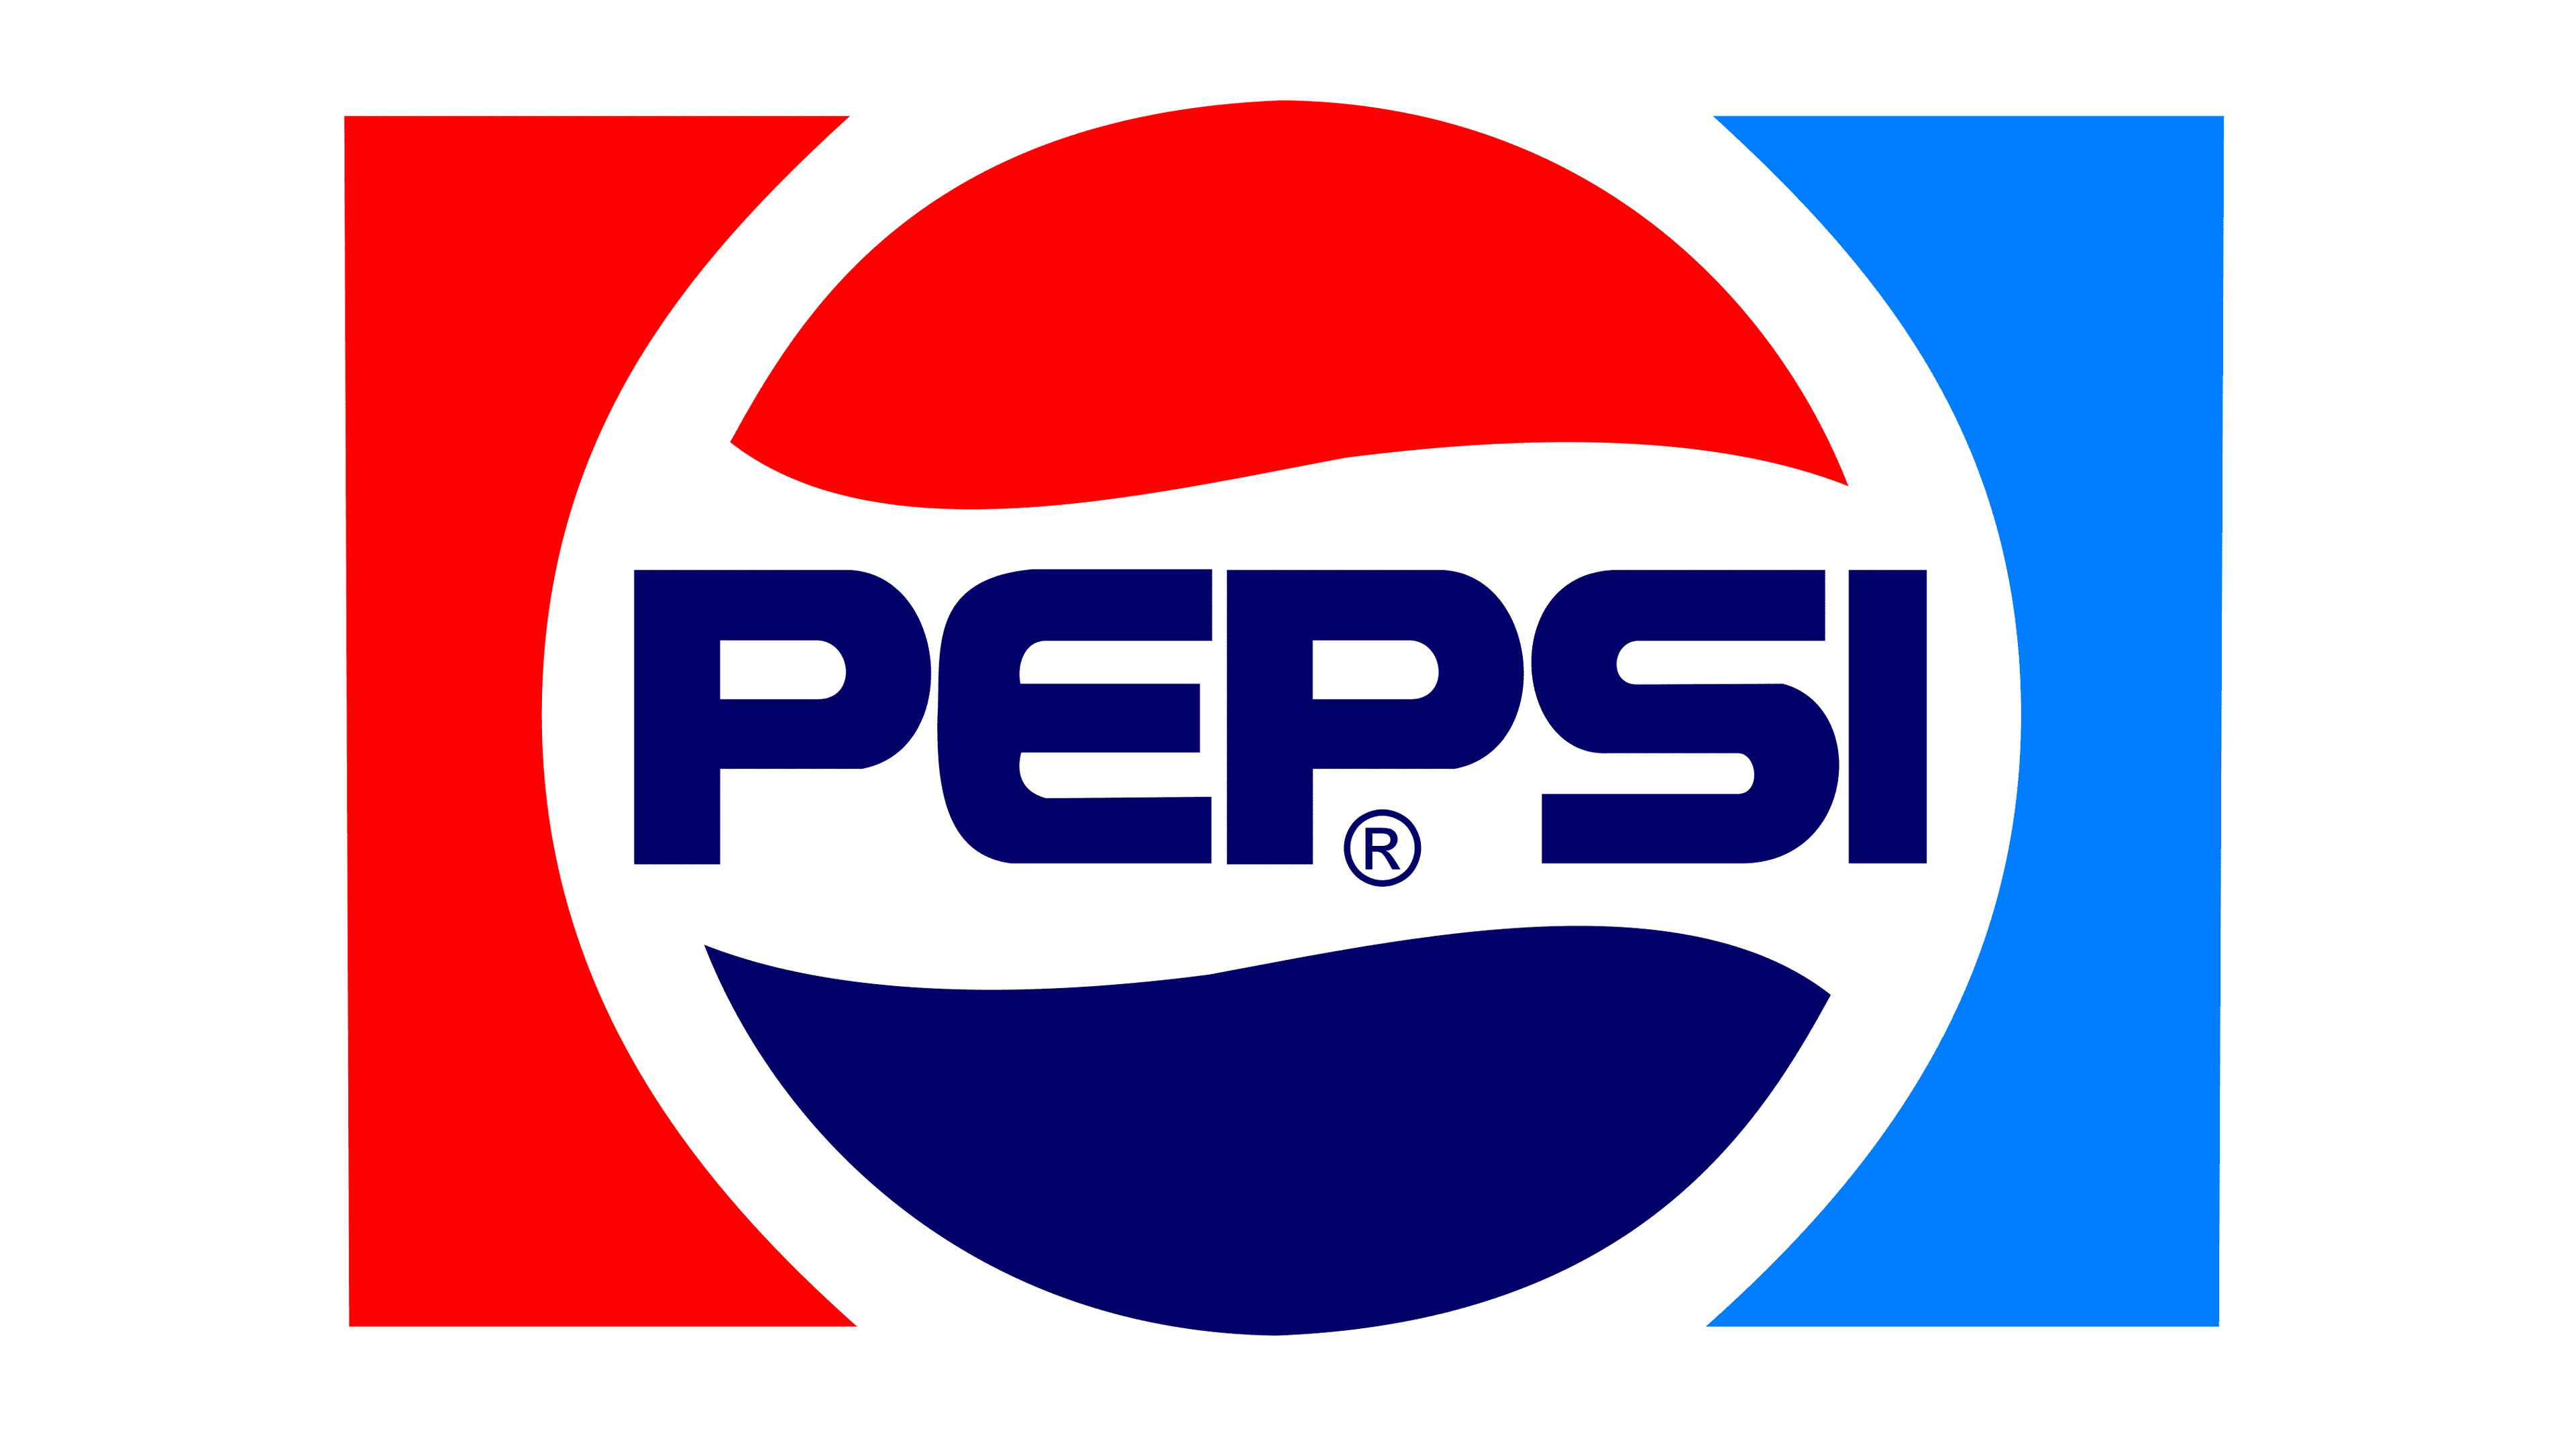 pepsi logos